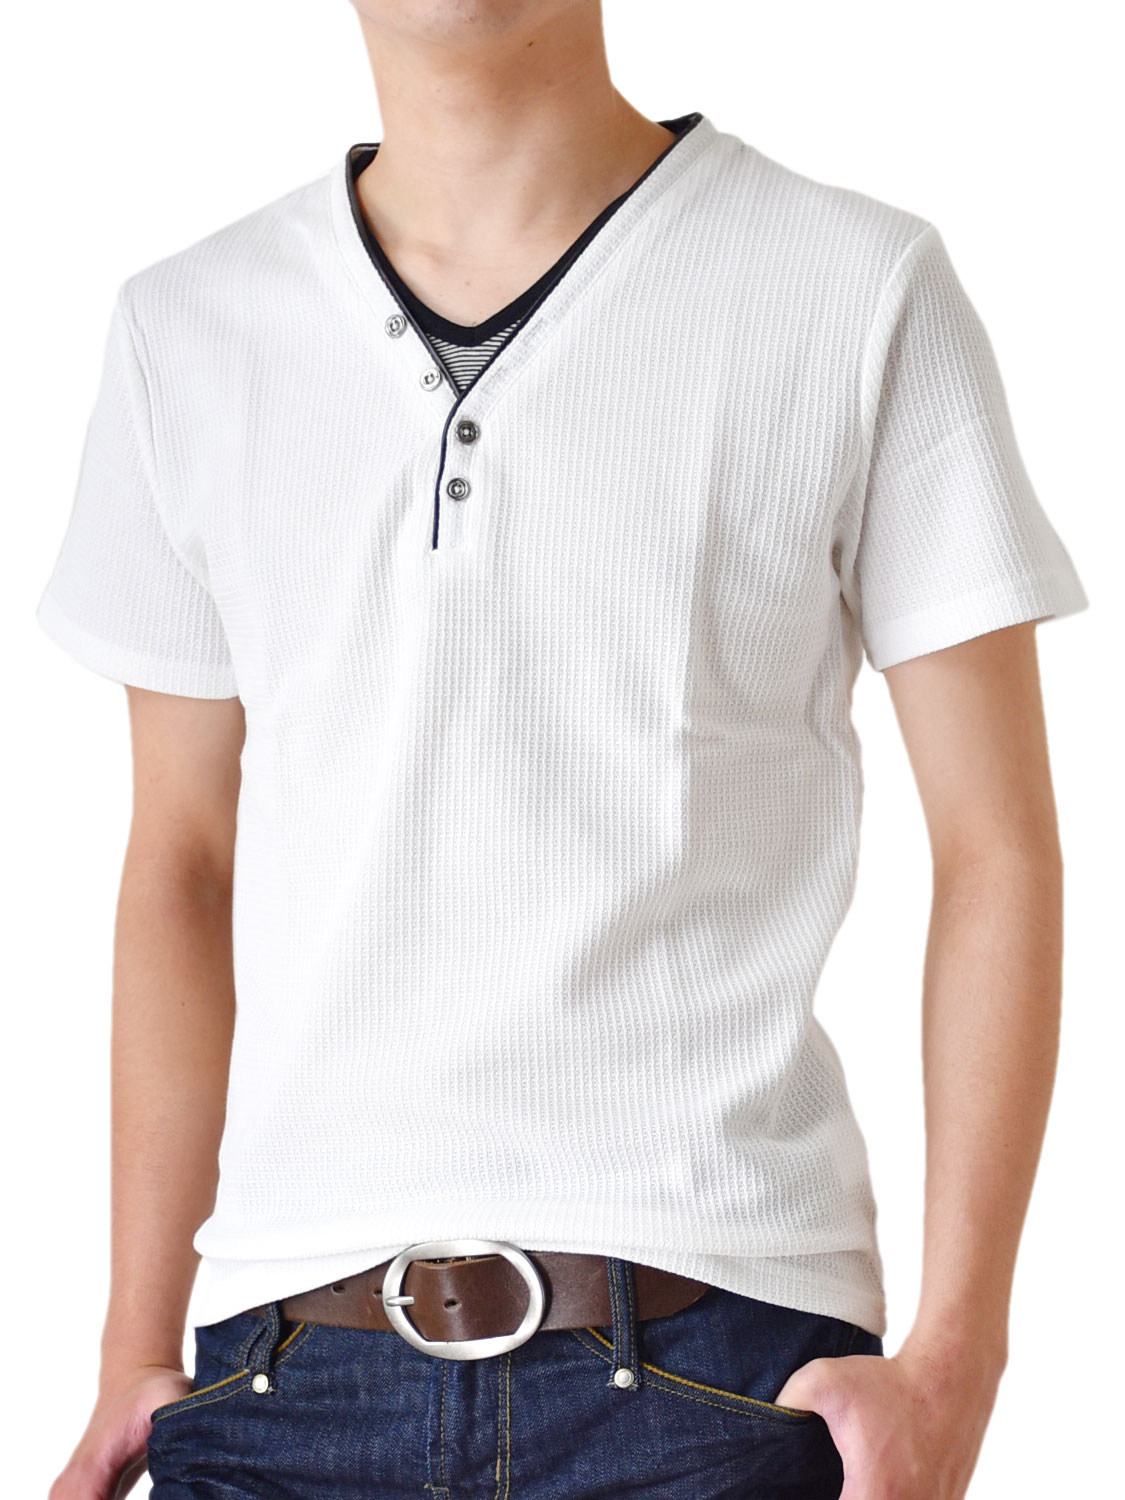 カットソー メンズ Ｙヘンリー シャドーストライプ Tシャツ 半袖 送料無料 通販M《M2》